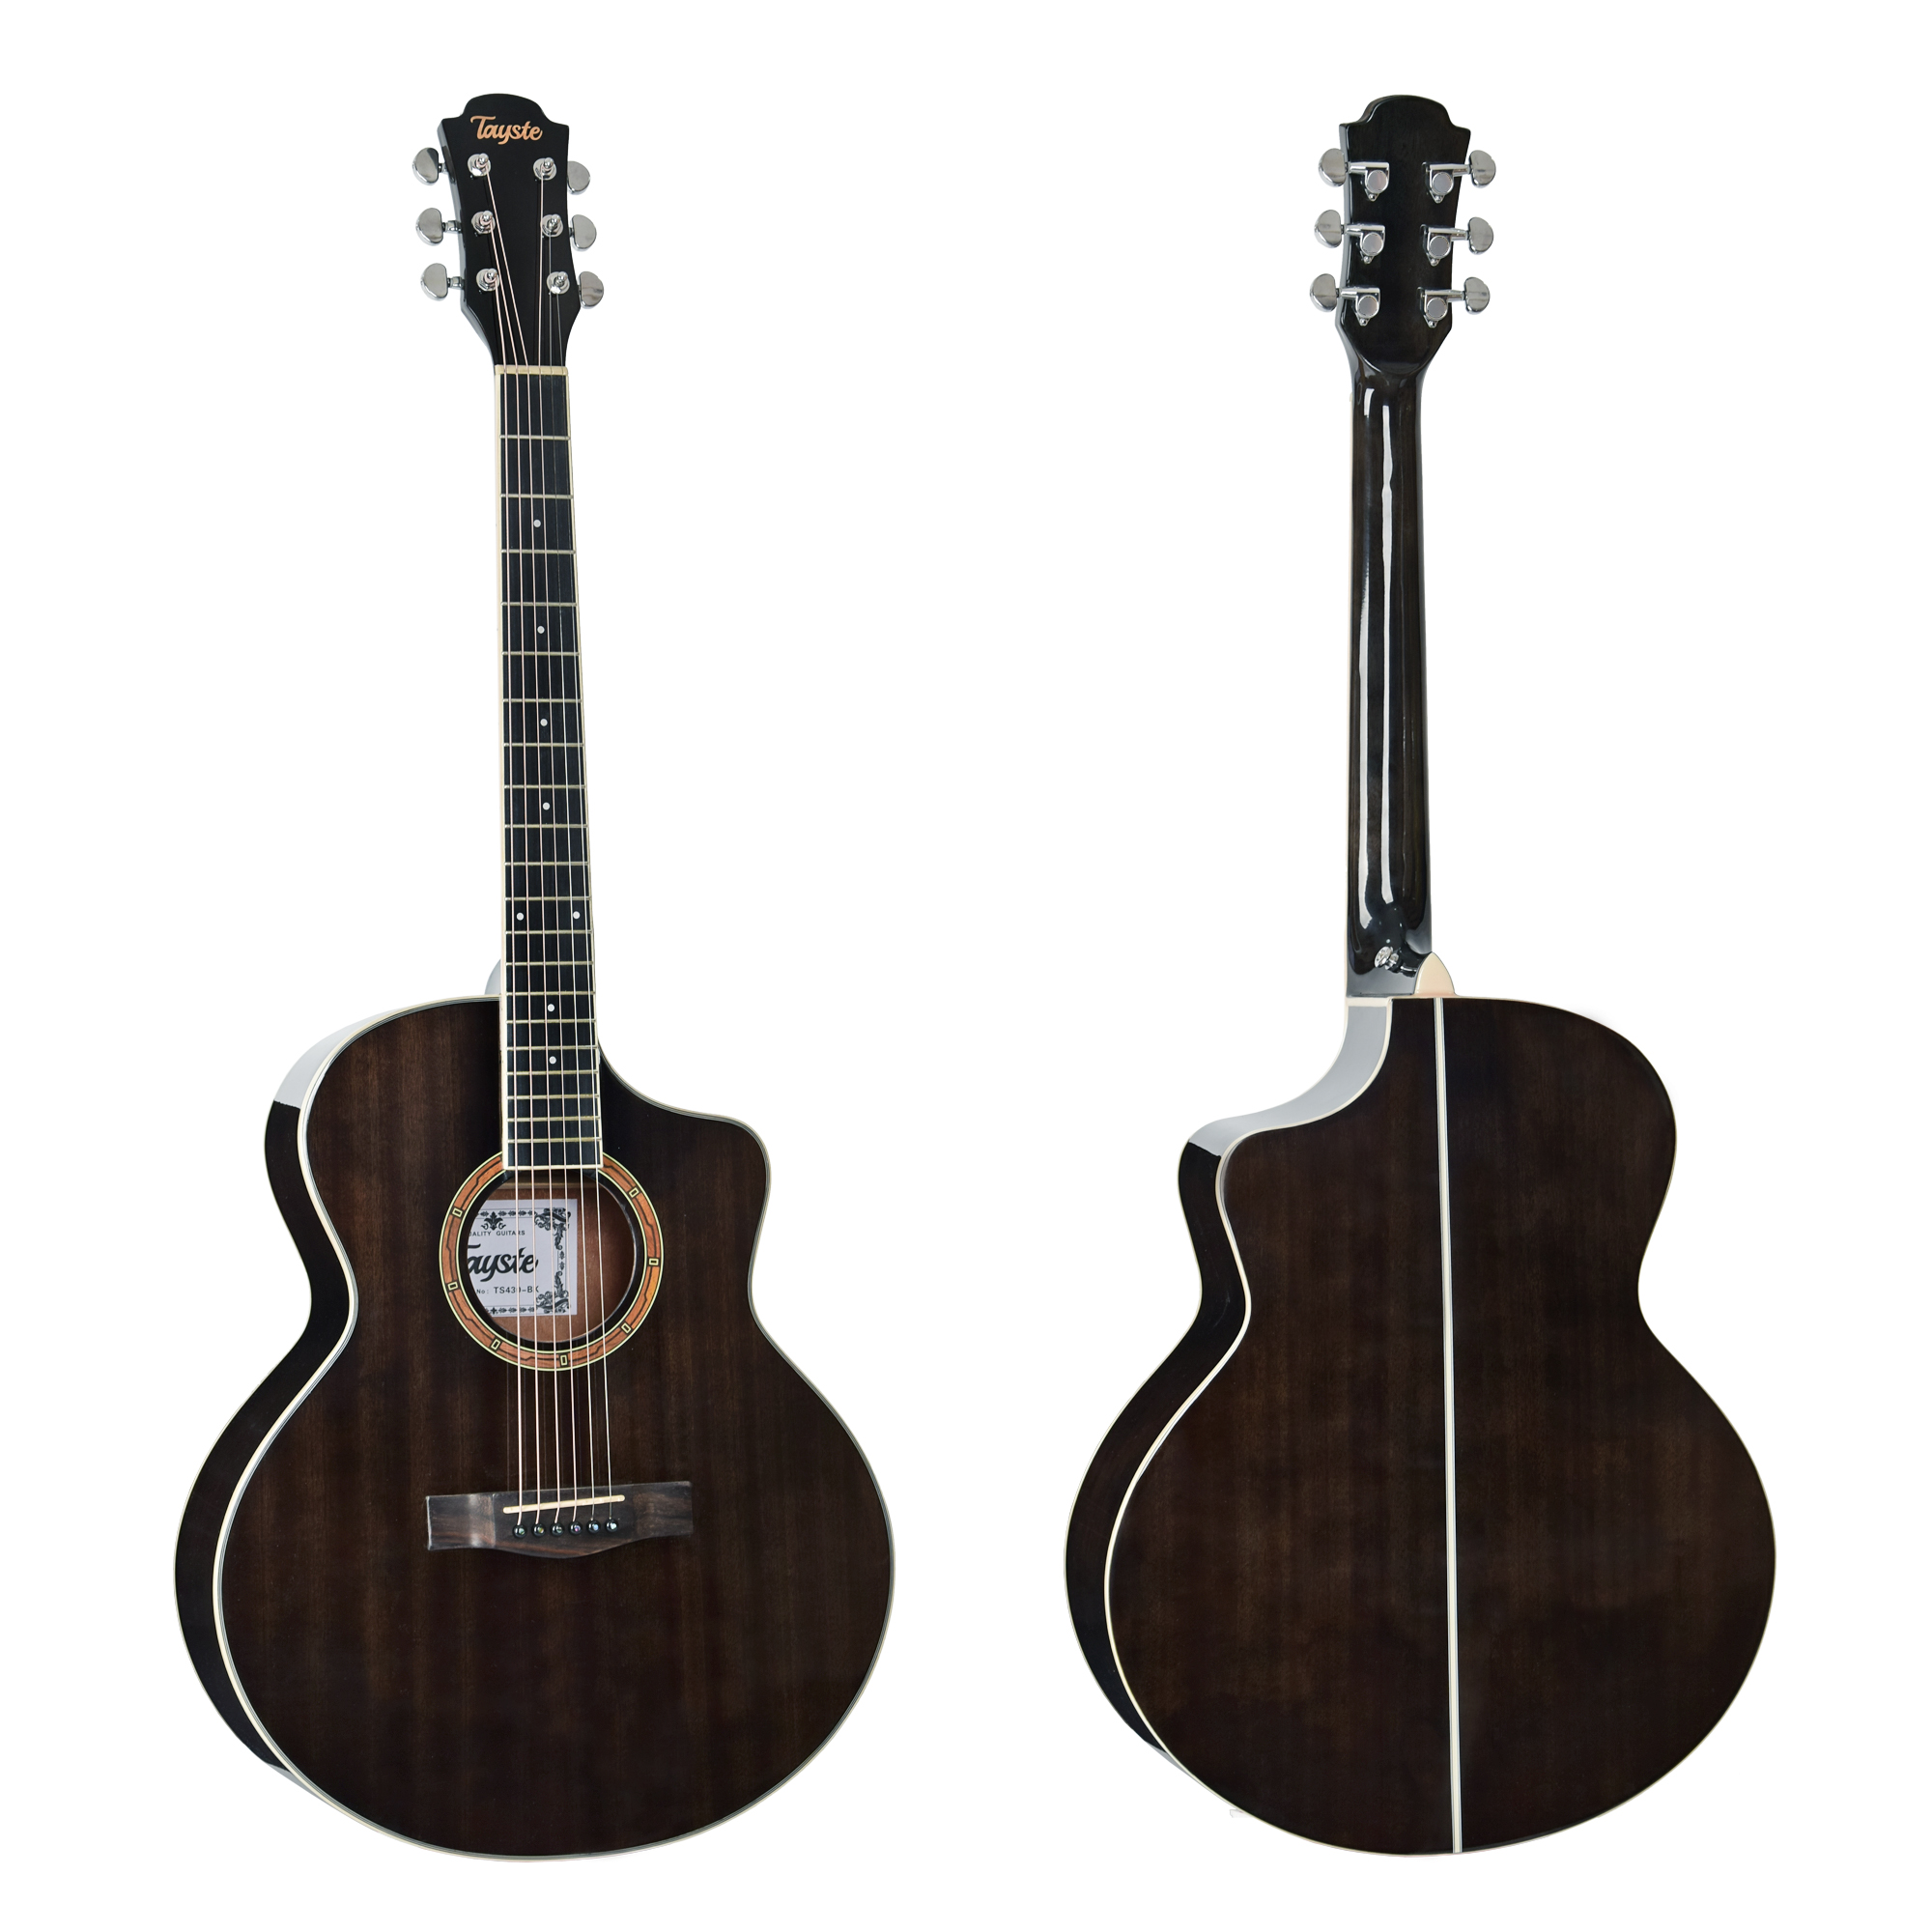 גיטרה אקוסטית שחורה  Guitar - Acoustic guitar TS430 Black